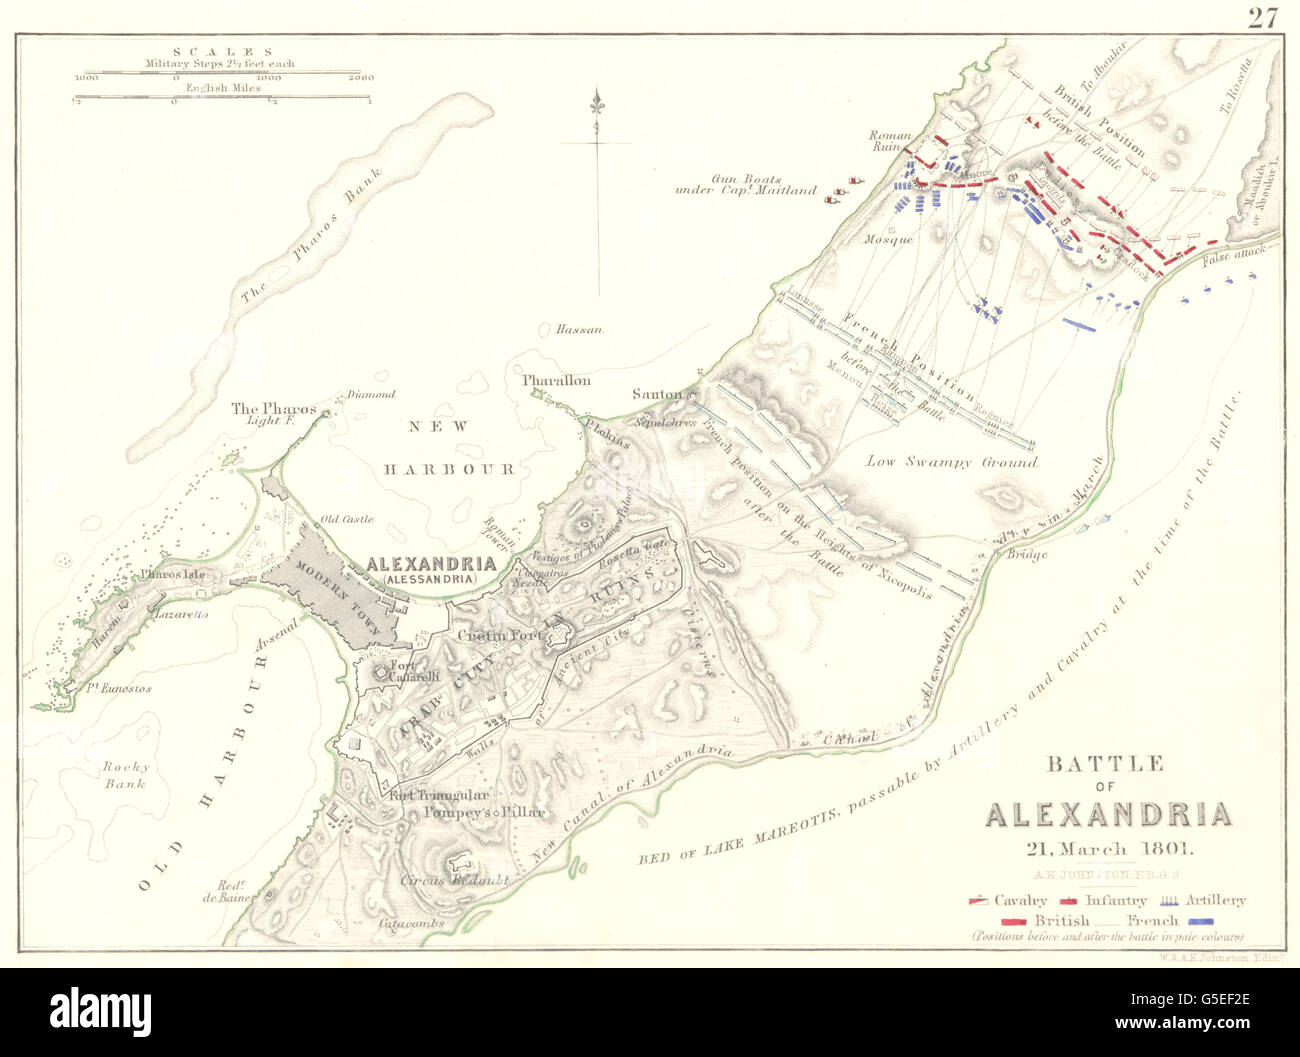 Schlacht von ALEXANDRIA: 21. März 1801. Ägypten. Napoleonischen Kriege 1848 alte Karte Stockfoto